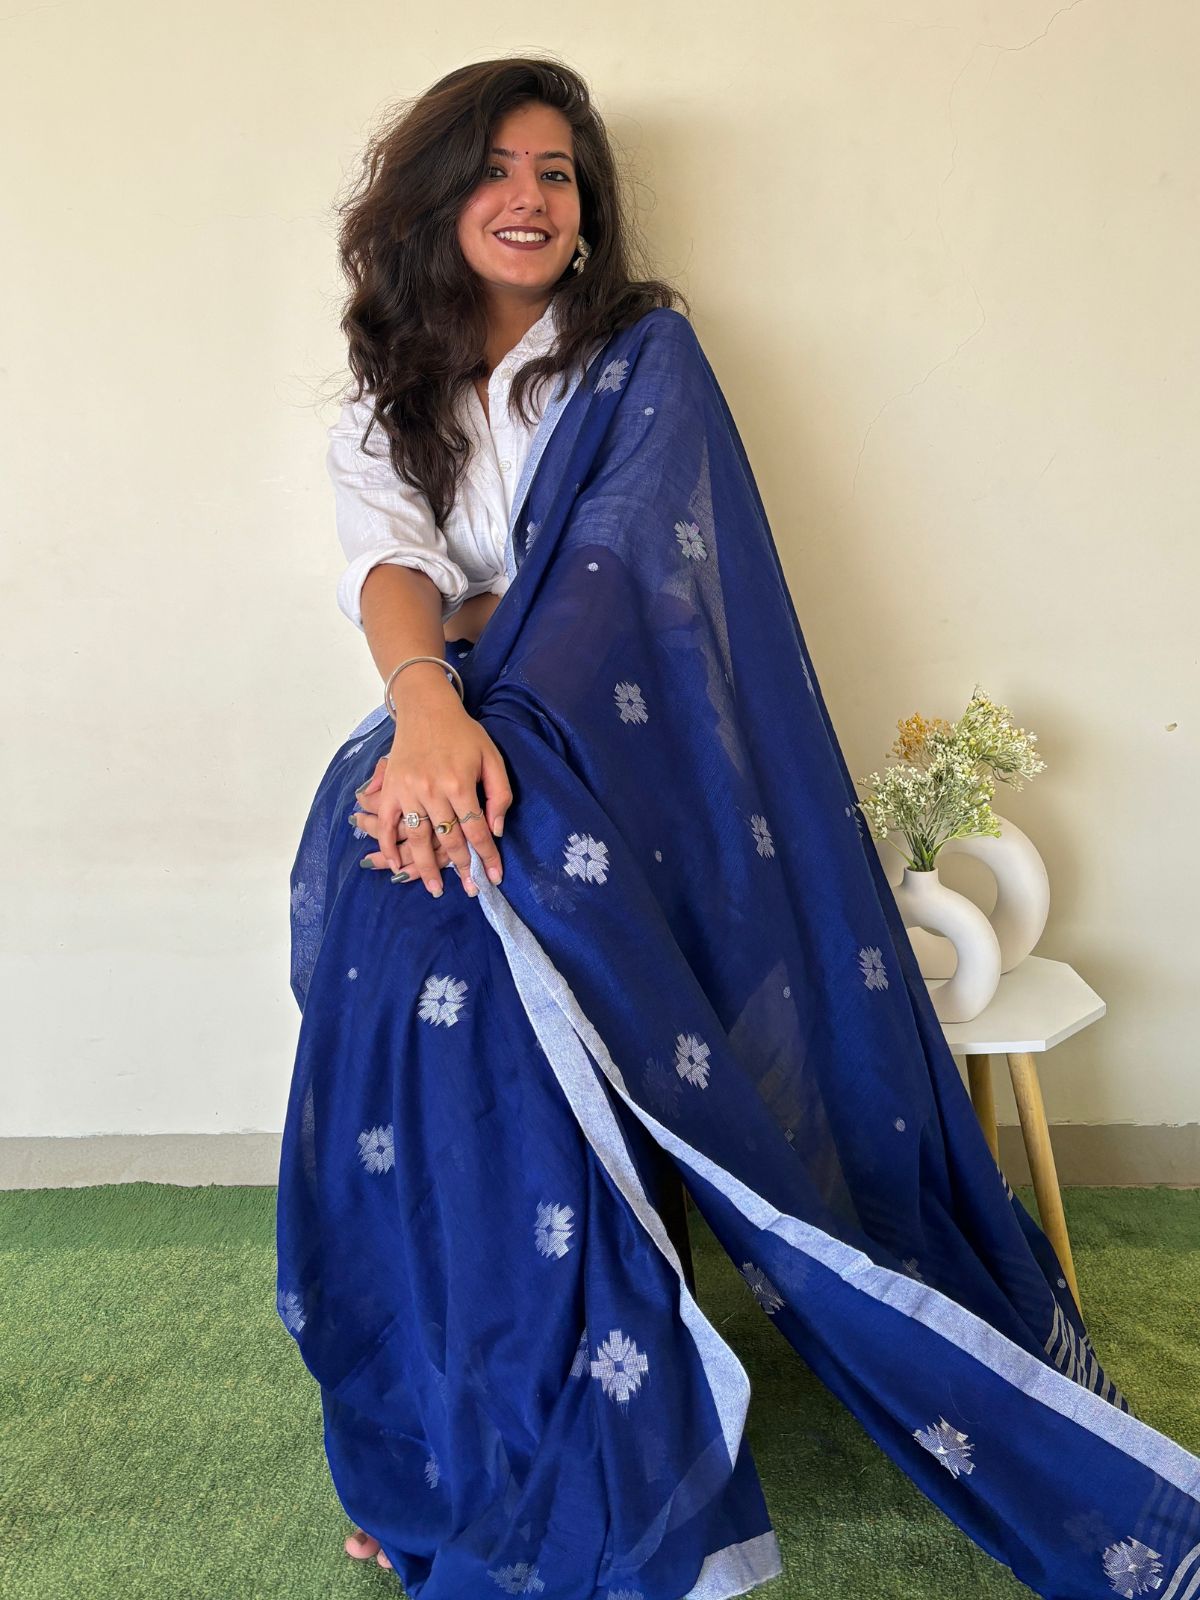 300 रुपये से भी कम में मिल जाएंगी साड़ी के ये लेटेस्ट डिजाइंस, बचेंगे काफी  पैसे | affordable saree designs under 300 rupees | HerZindagi